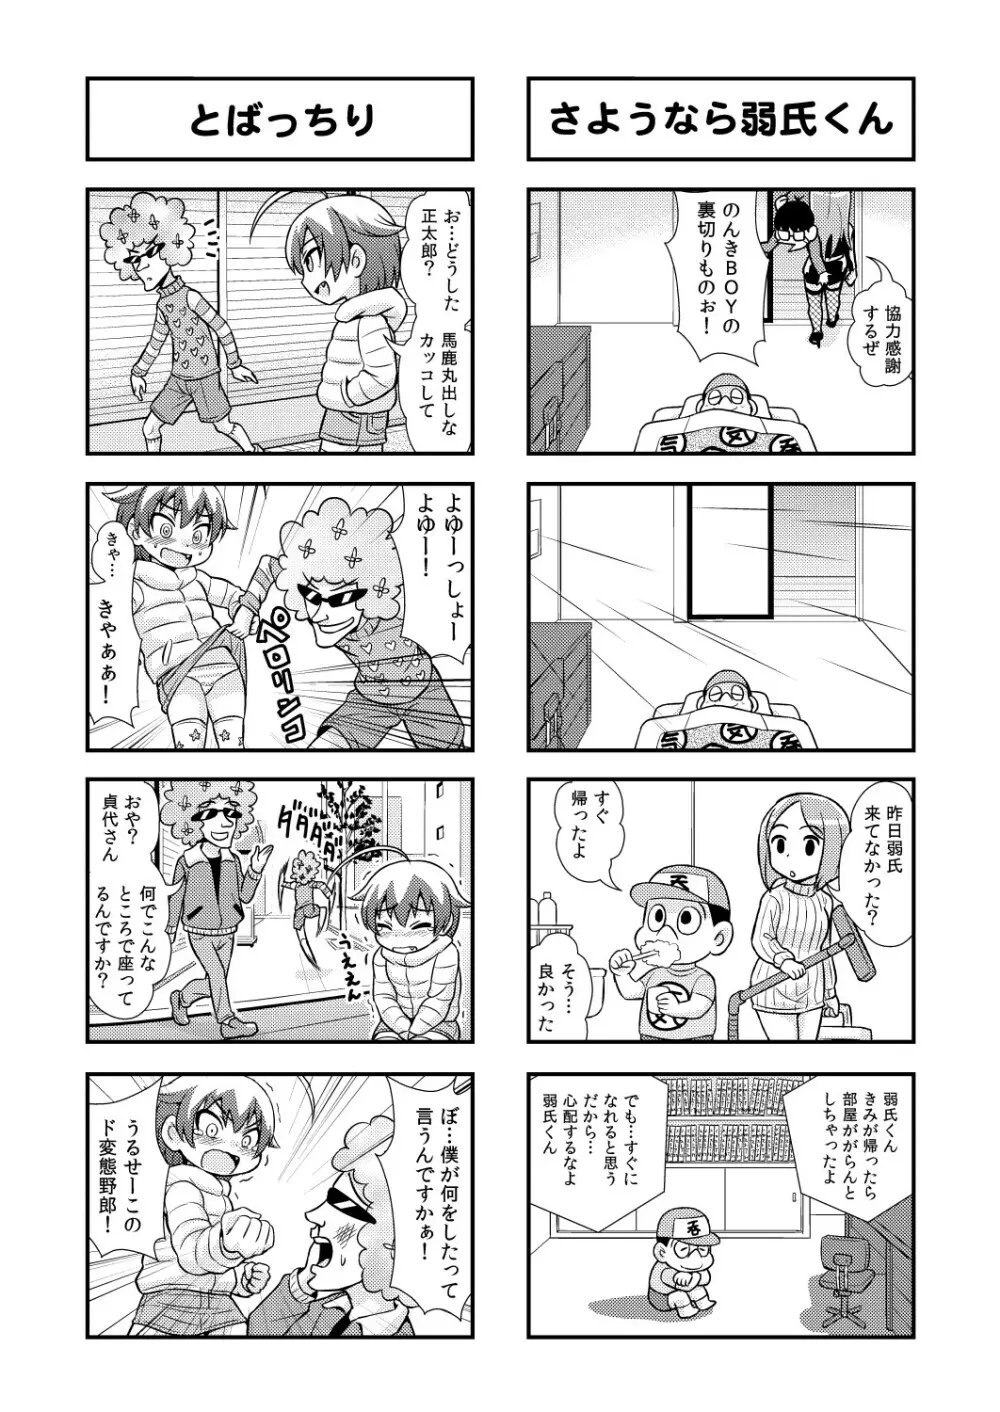 のんきBOY 1-48 50ページ